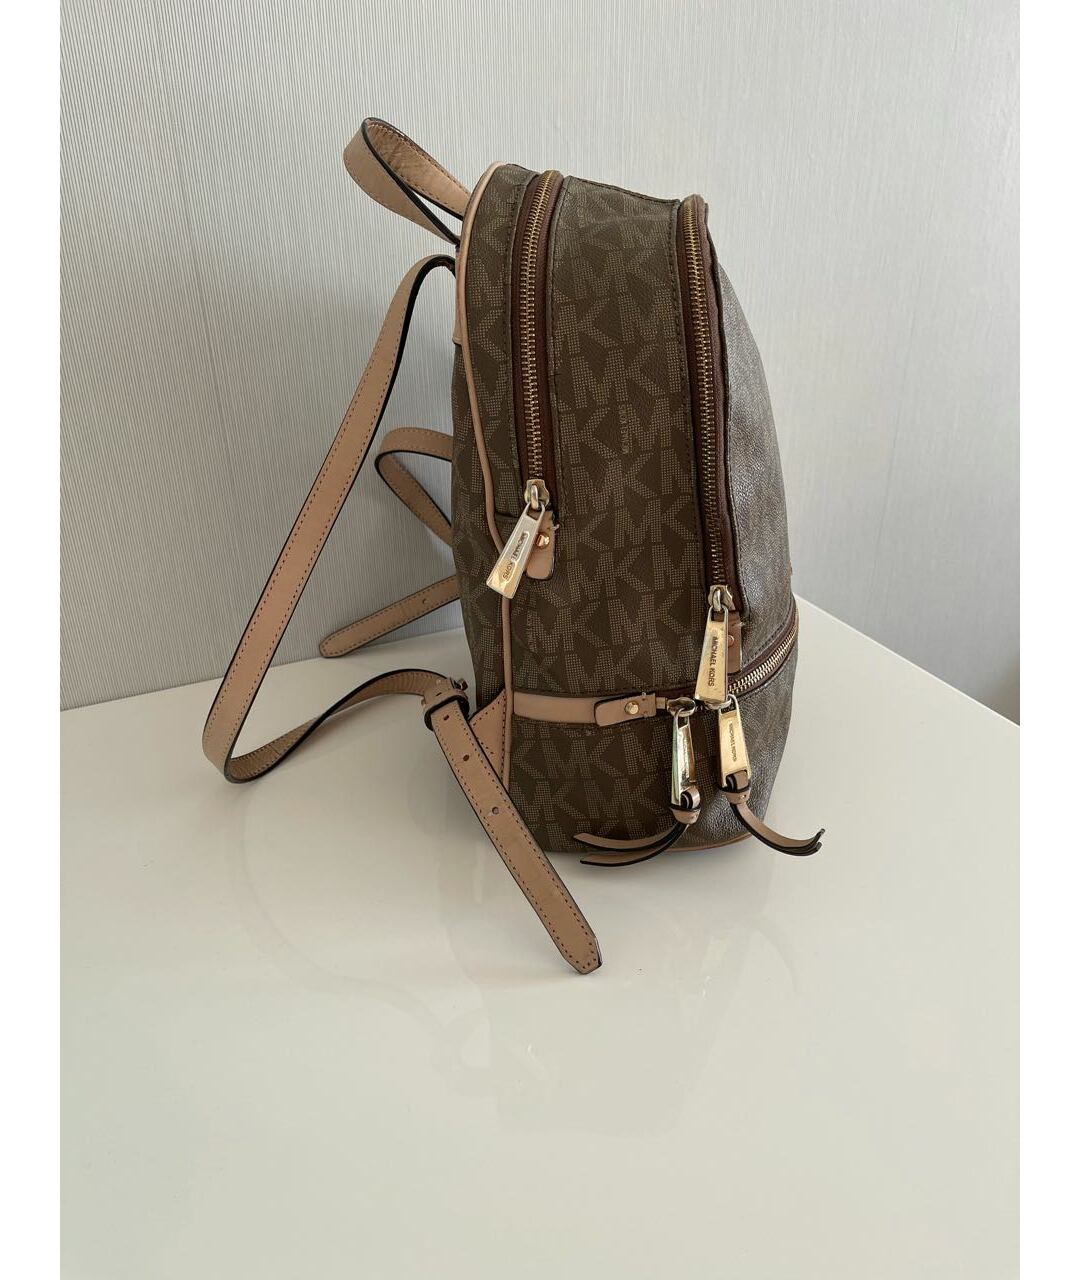 MICHAEL KORS Коричневый кожаный рюкзак, фото 2